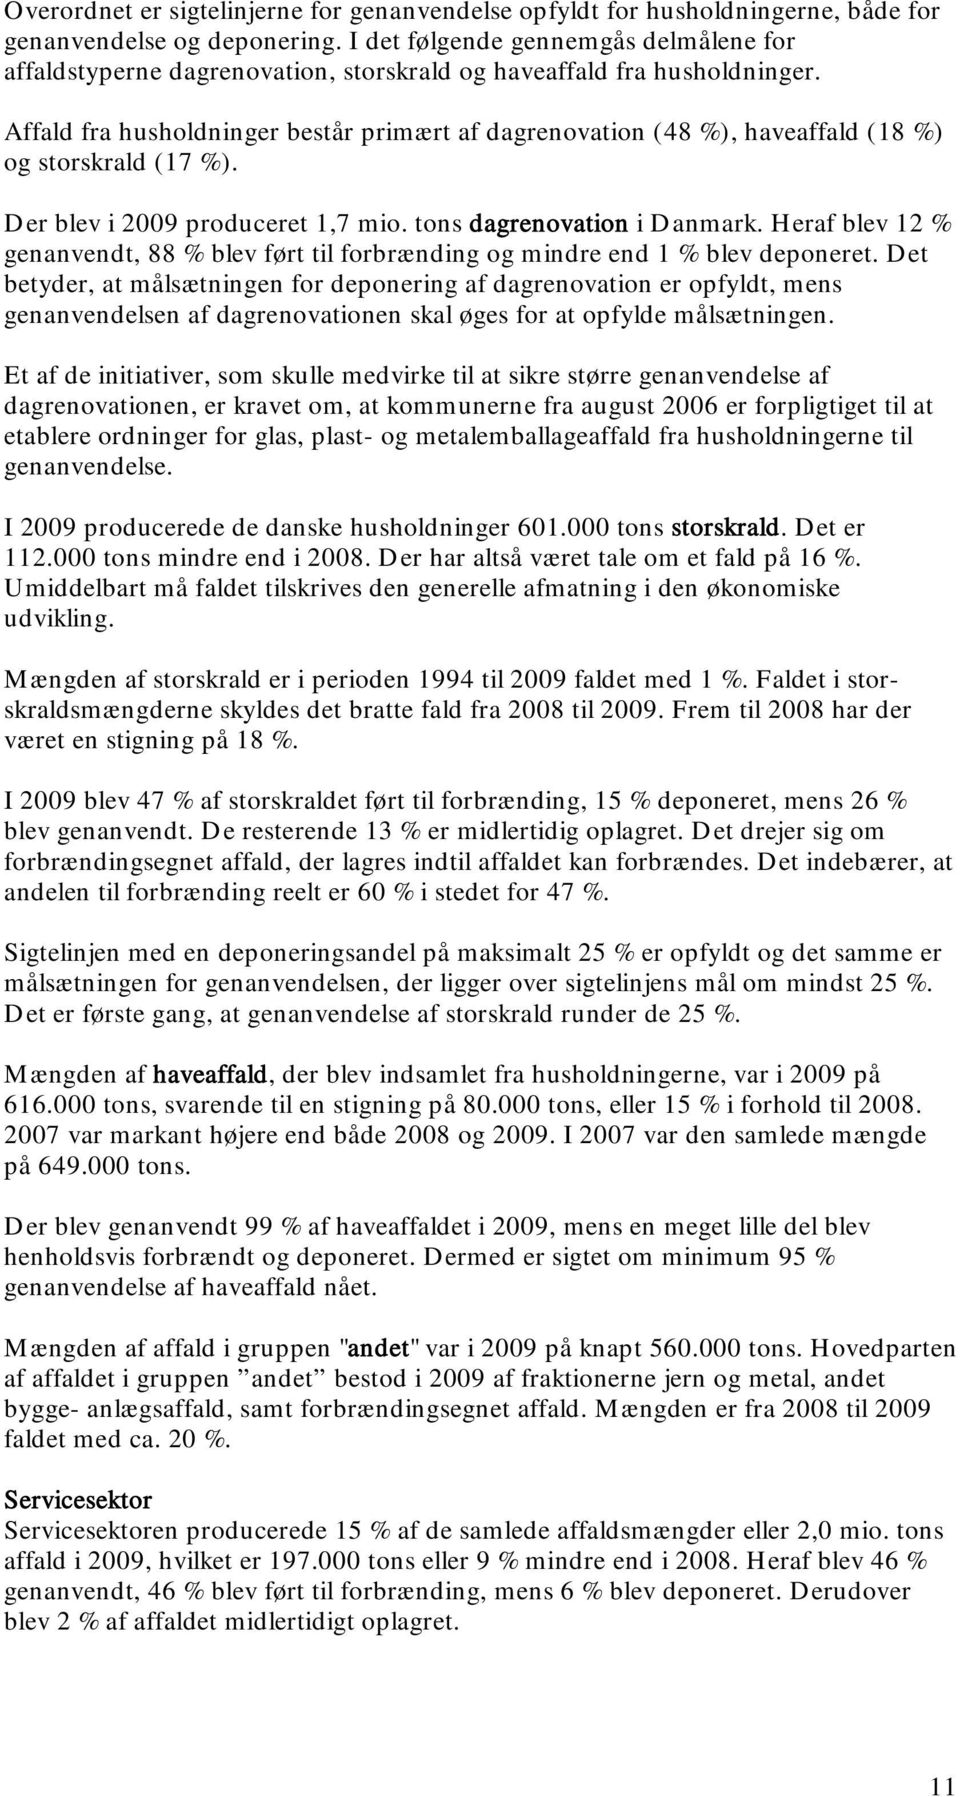 Affald fra husholdninger består primært af dagrenovation (48 %), haveaffald (18 %) og storskrald (17 %). Der blev i 2009 produceret 1,7 mio. tons dagrenovation i Danmark.